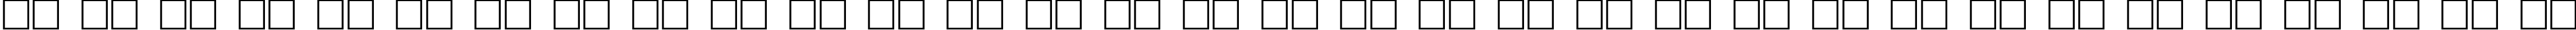 Пример написания русского алфавита шрифтом Bobcat